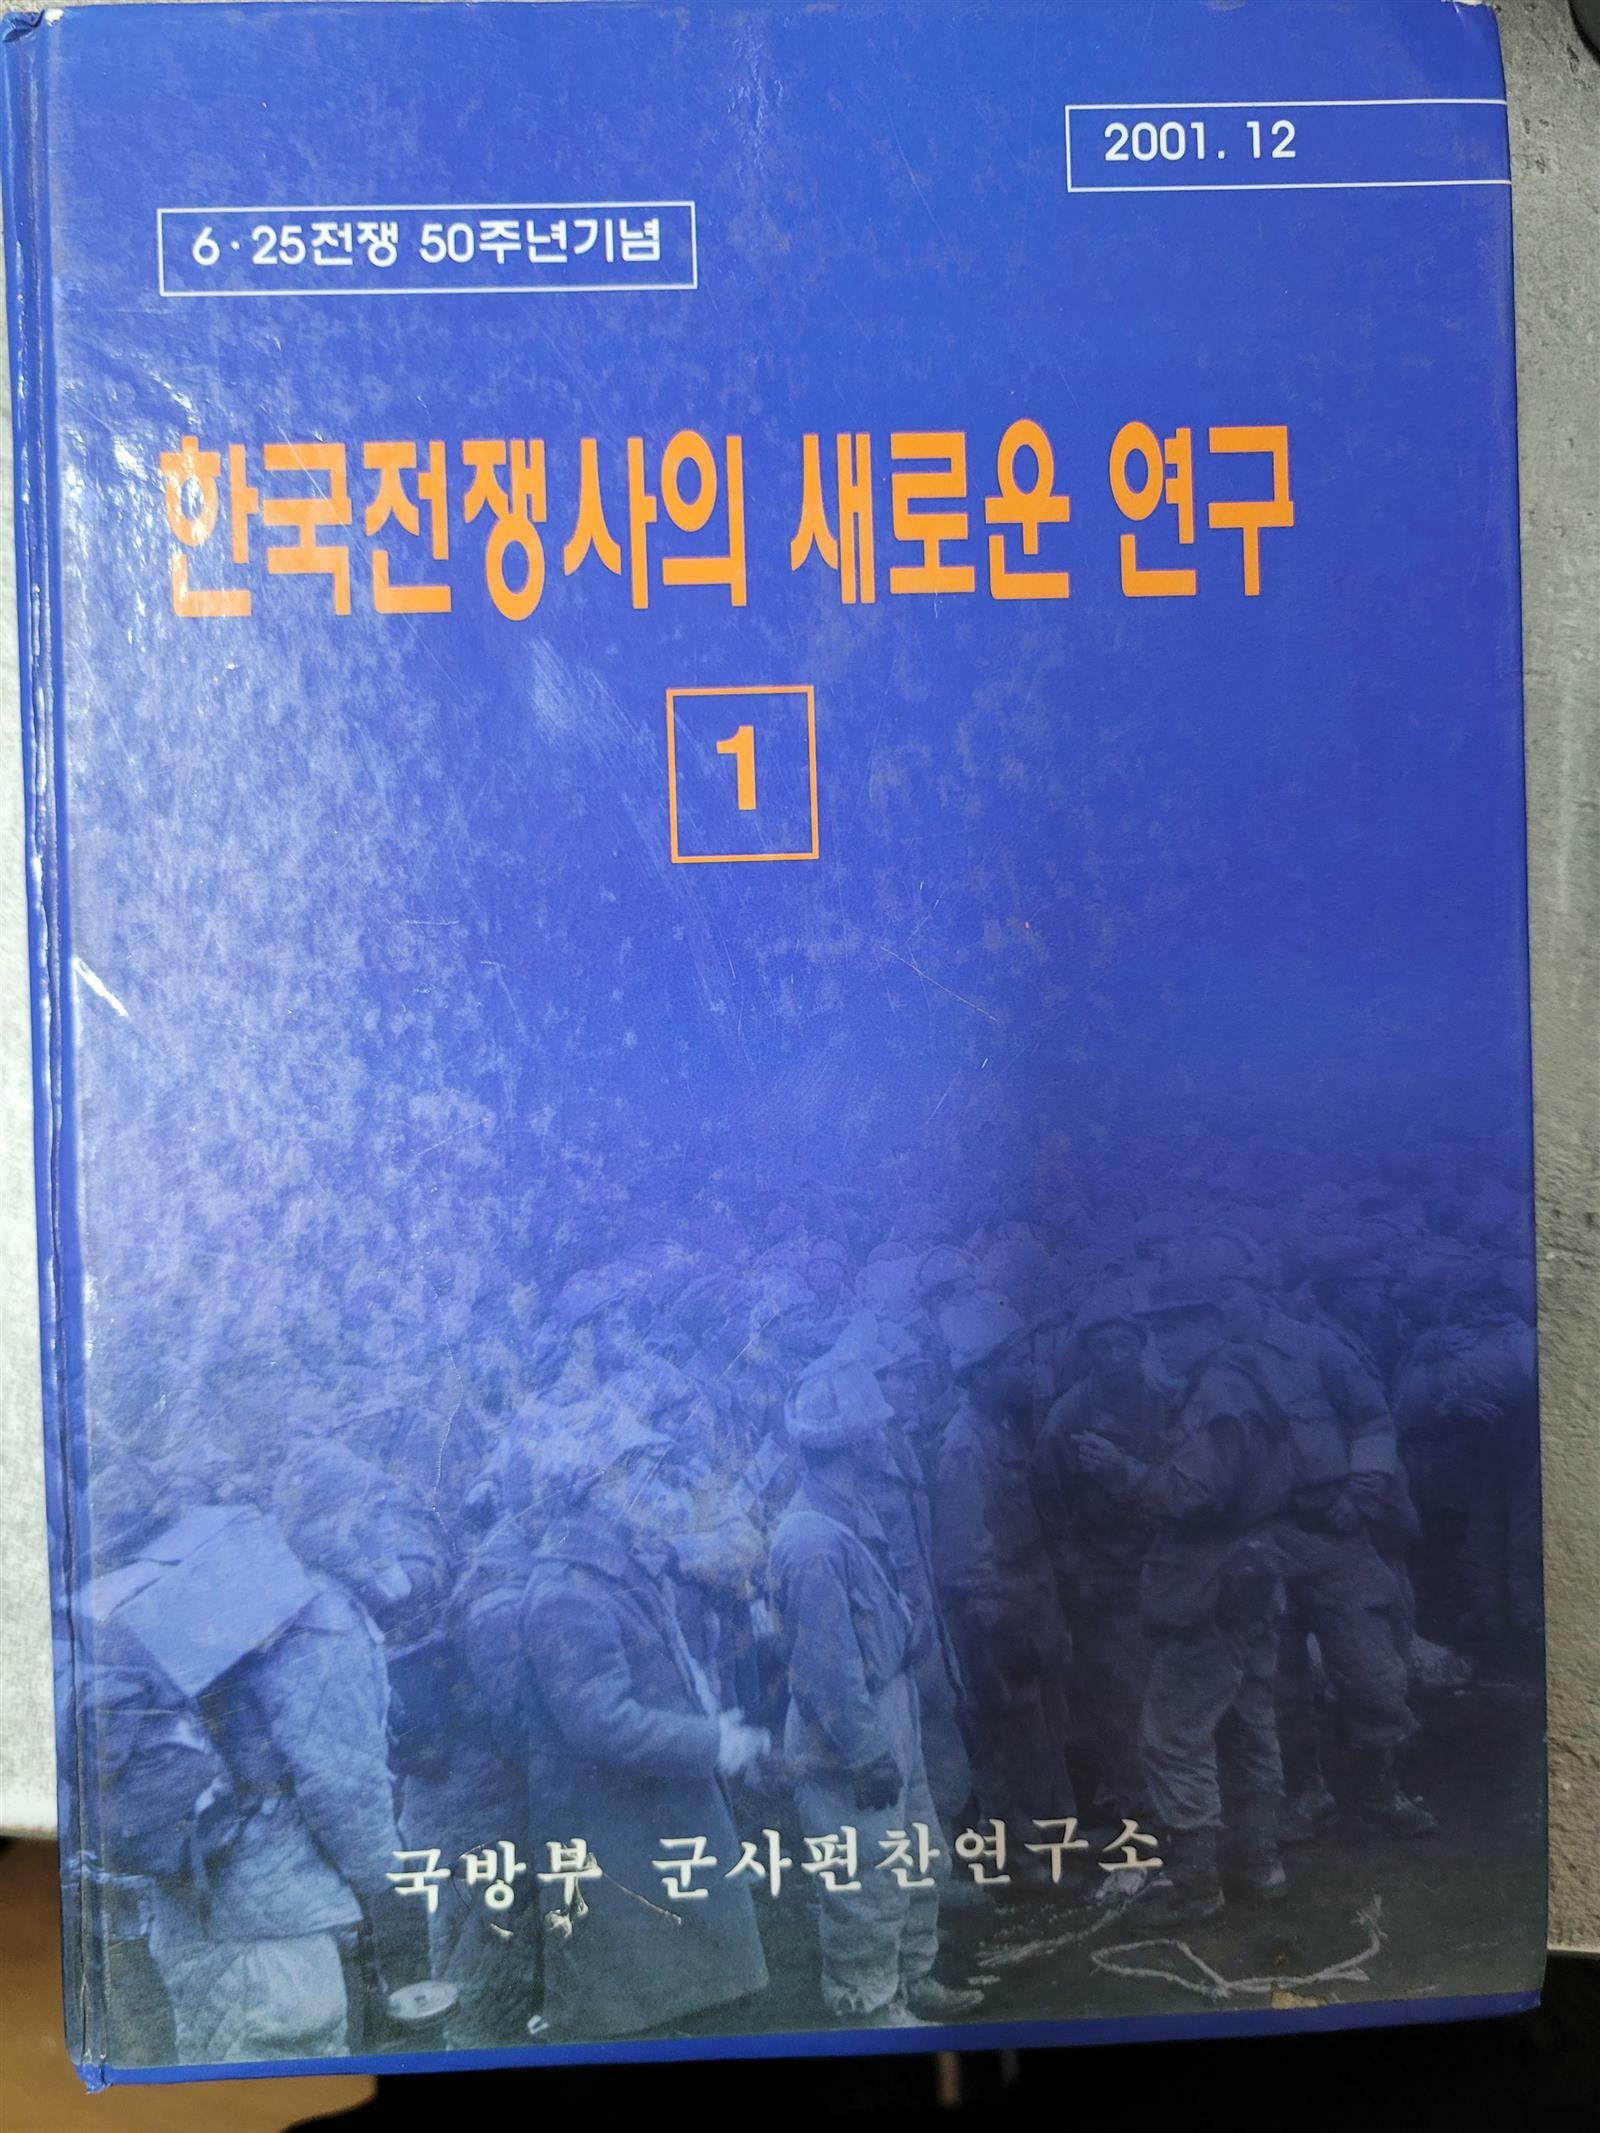 [중고] 한국전쟁사의 새로운 연구 1 - 6.25 전쟁 50주년 기념